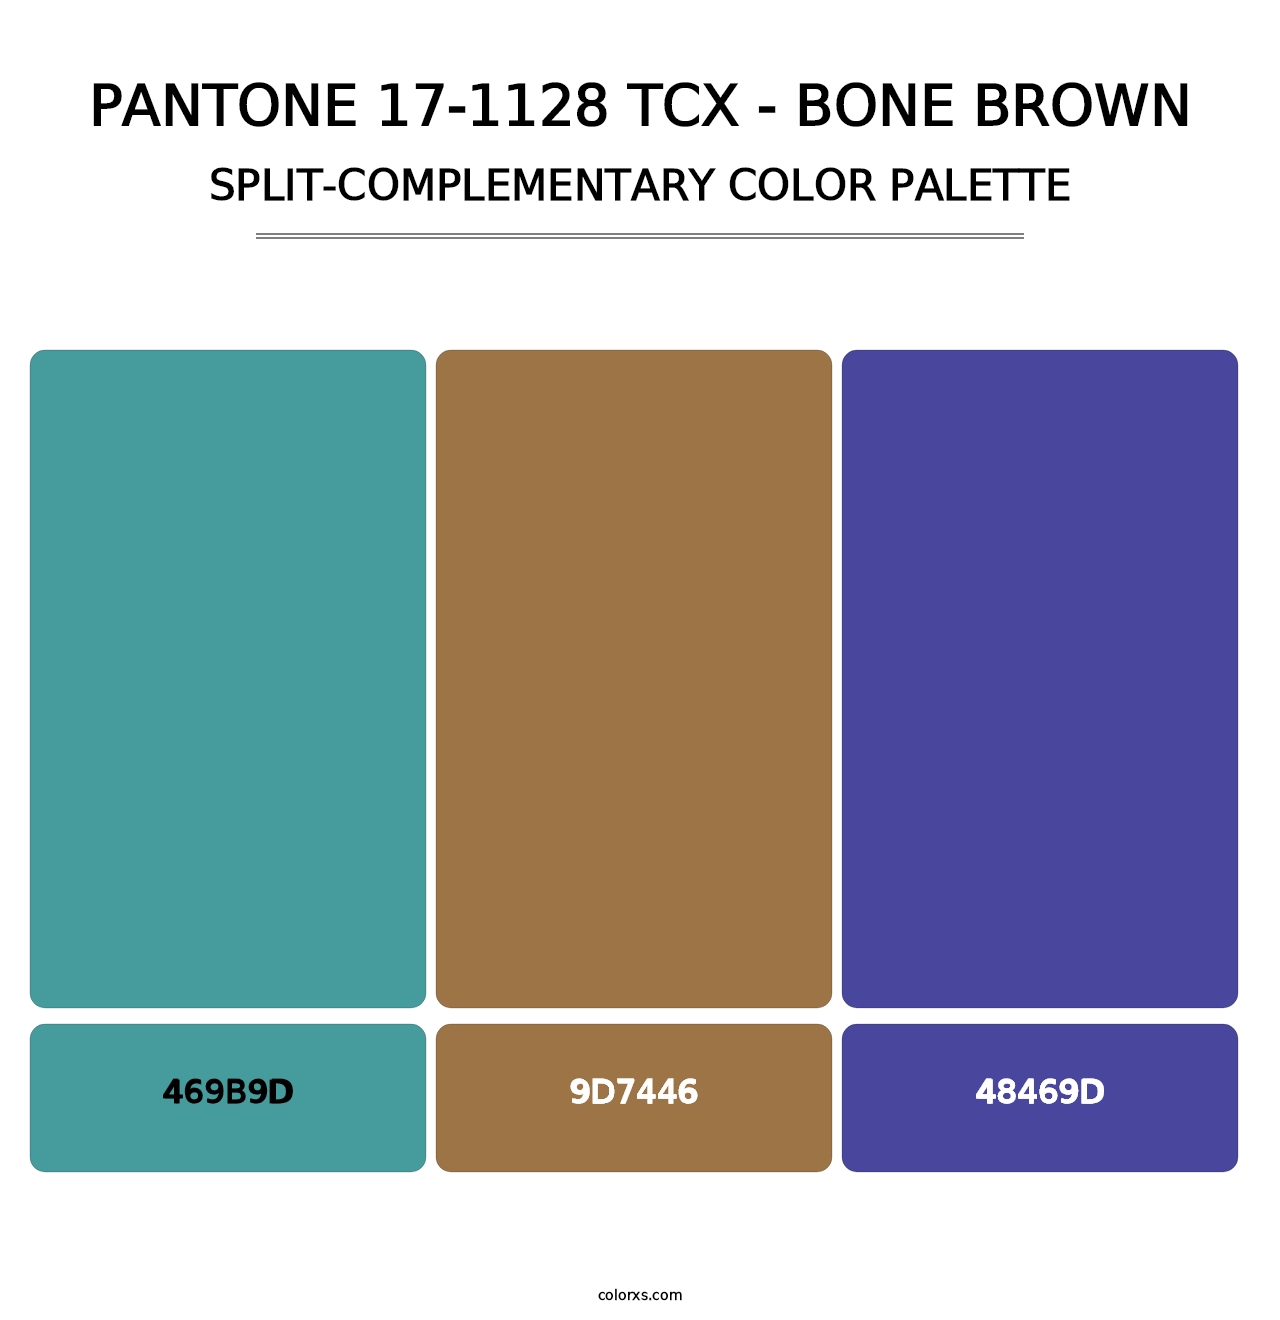 PANTONE 17-1128 TCX - Bone Brown - Split-Complementary Color Palette